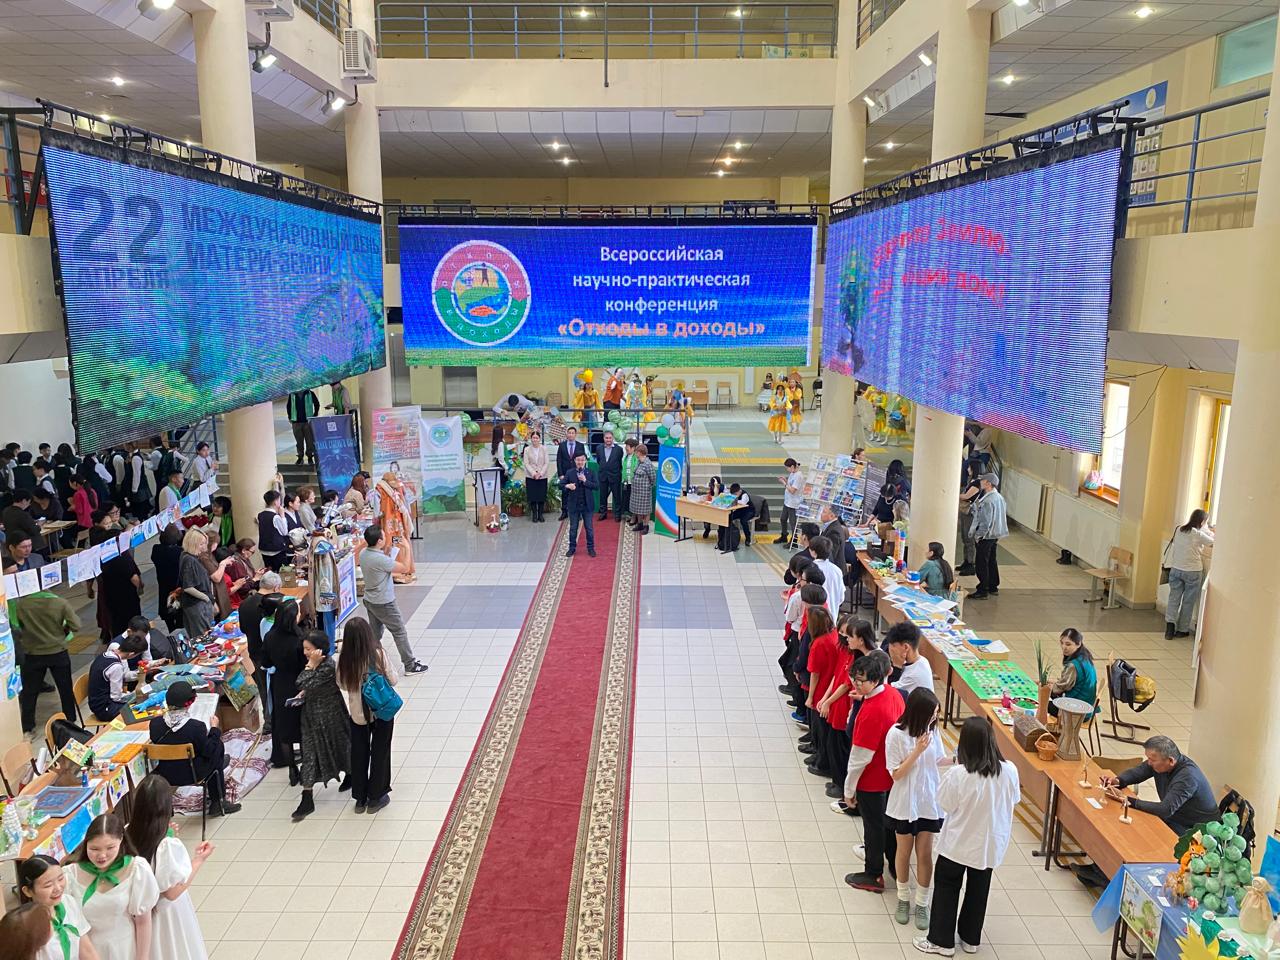 «Отходы в доходы»: в Якутске открылась всероссийская научно-практическая конференция